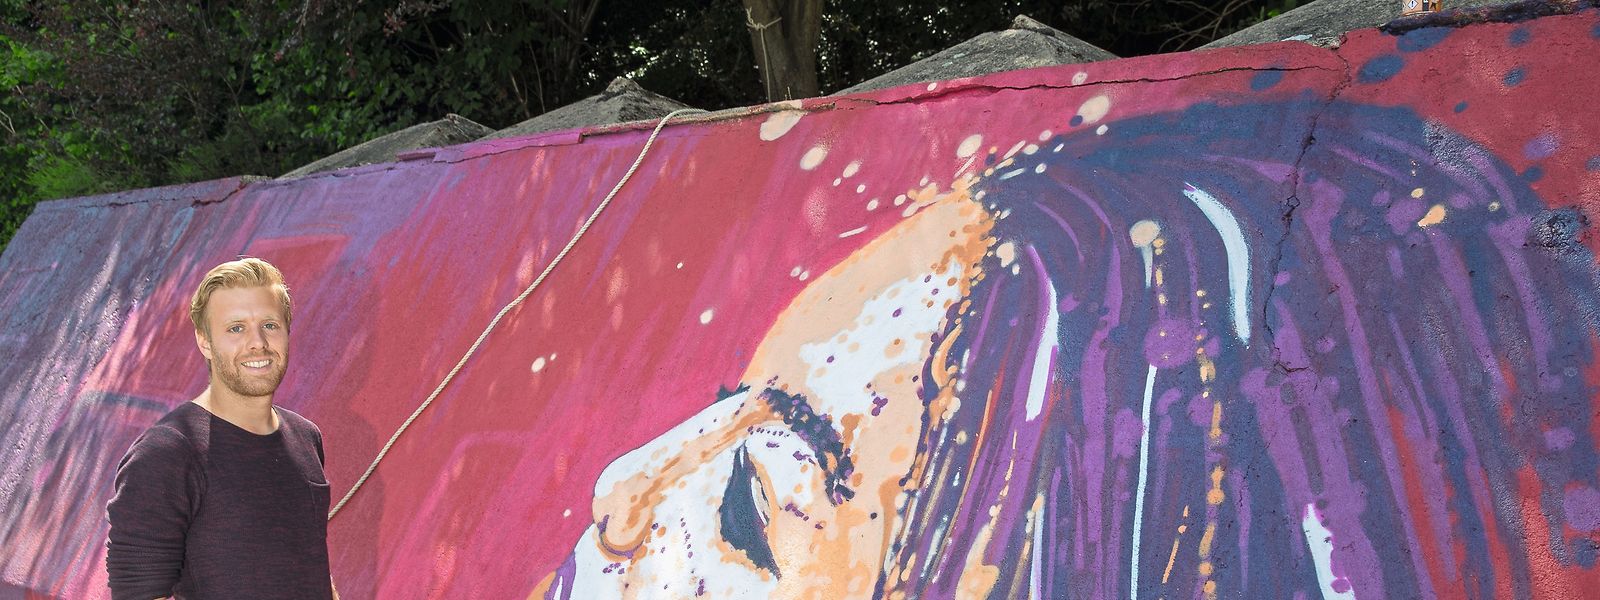 Kunstsprayer Raphaël Gindt in Aktion in Herserange: Das Frauenporträt auf der Stützmauer ist eine Auftragsarbeit im Rahmen des Festivals „Kufa’s Urban Art“.